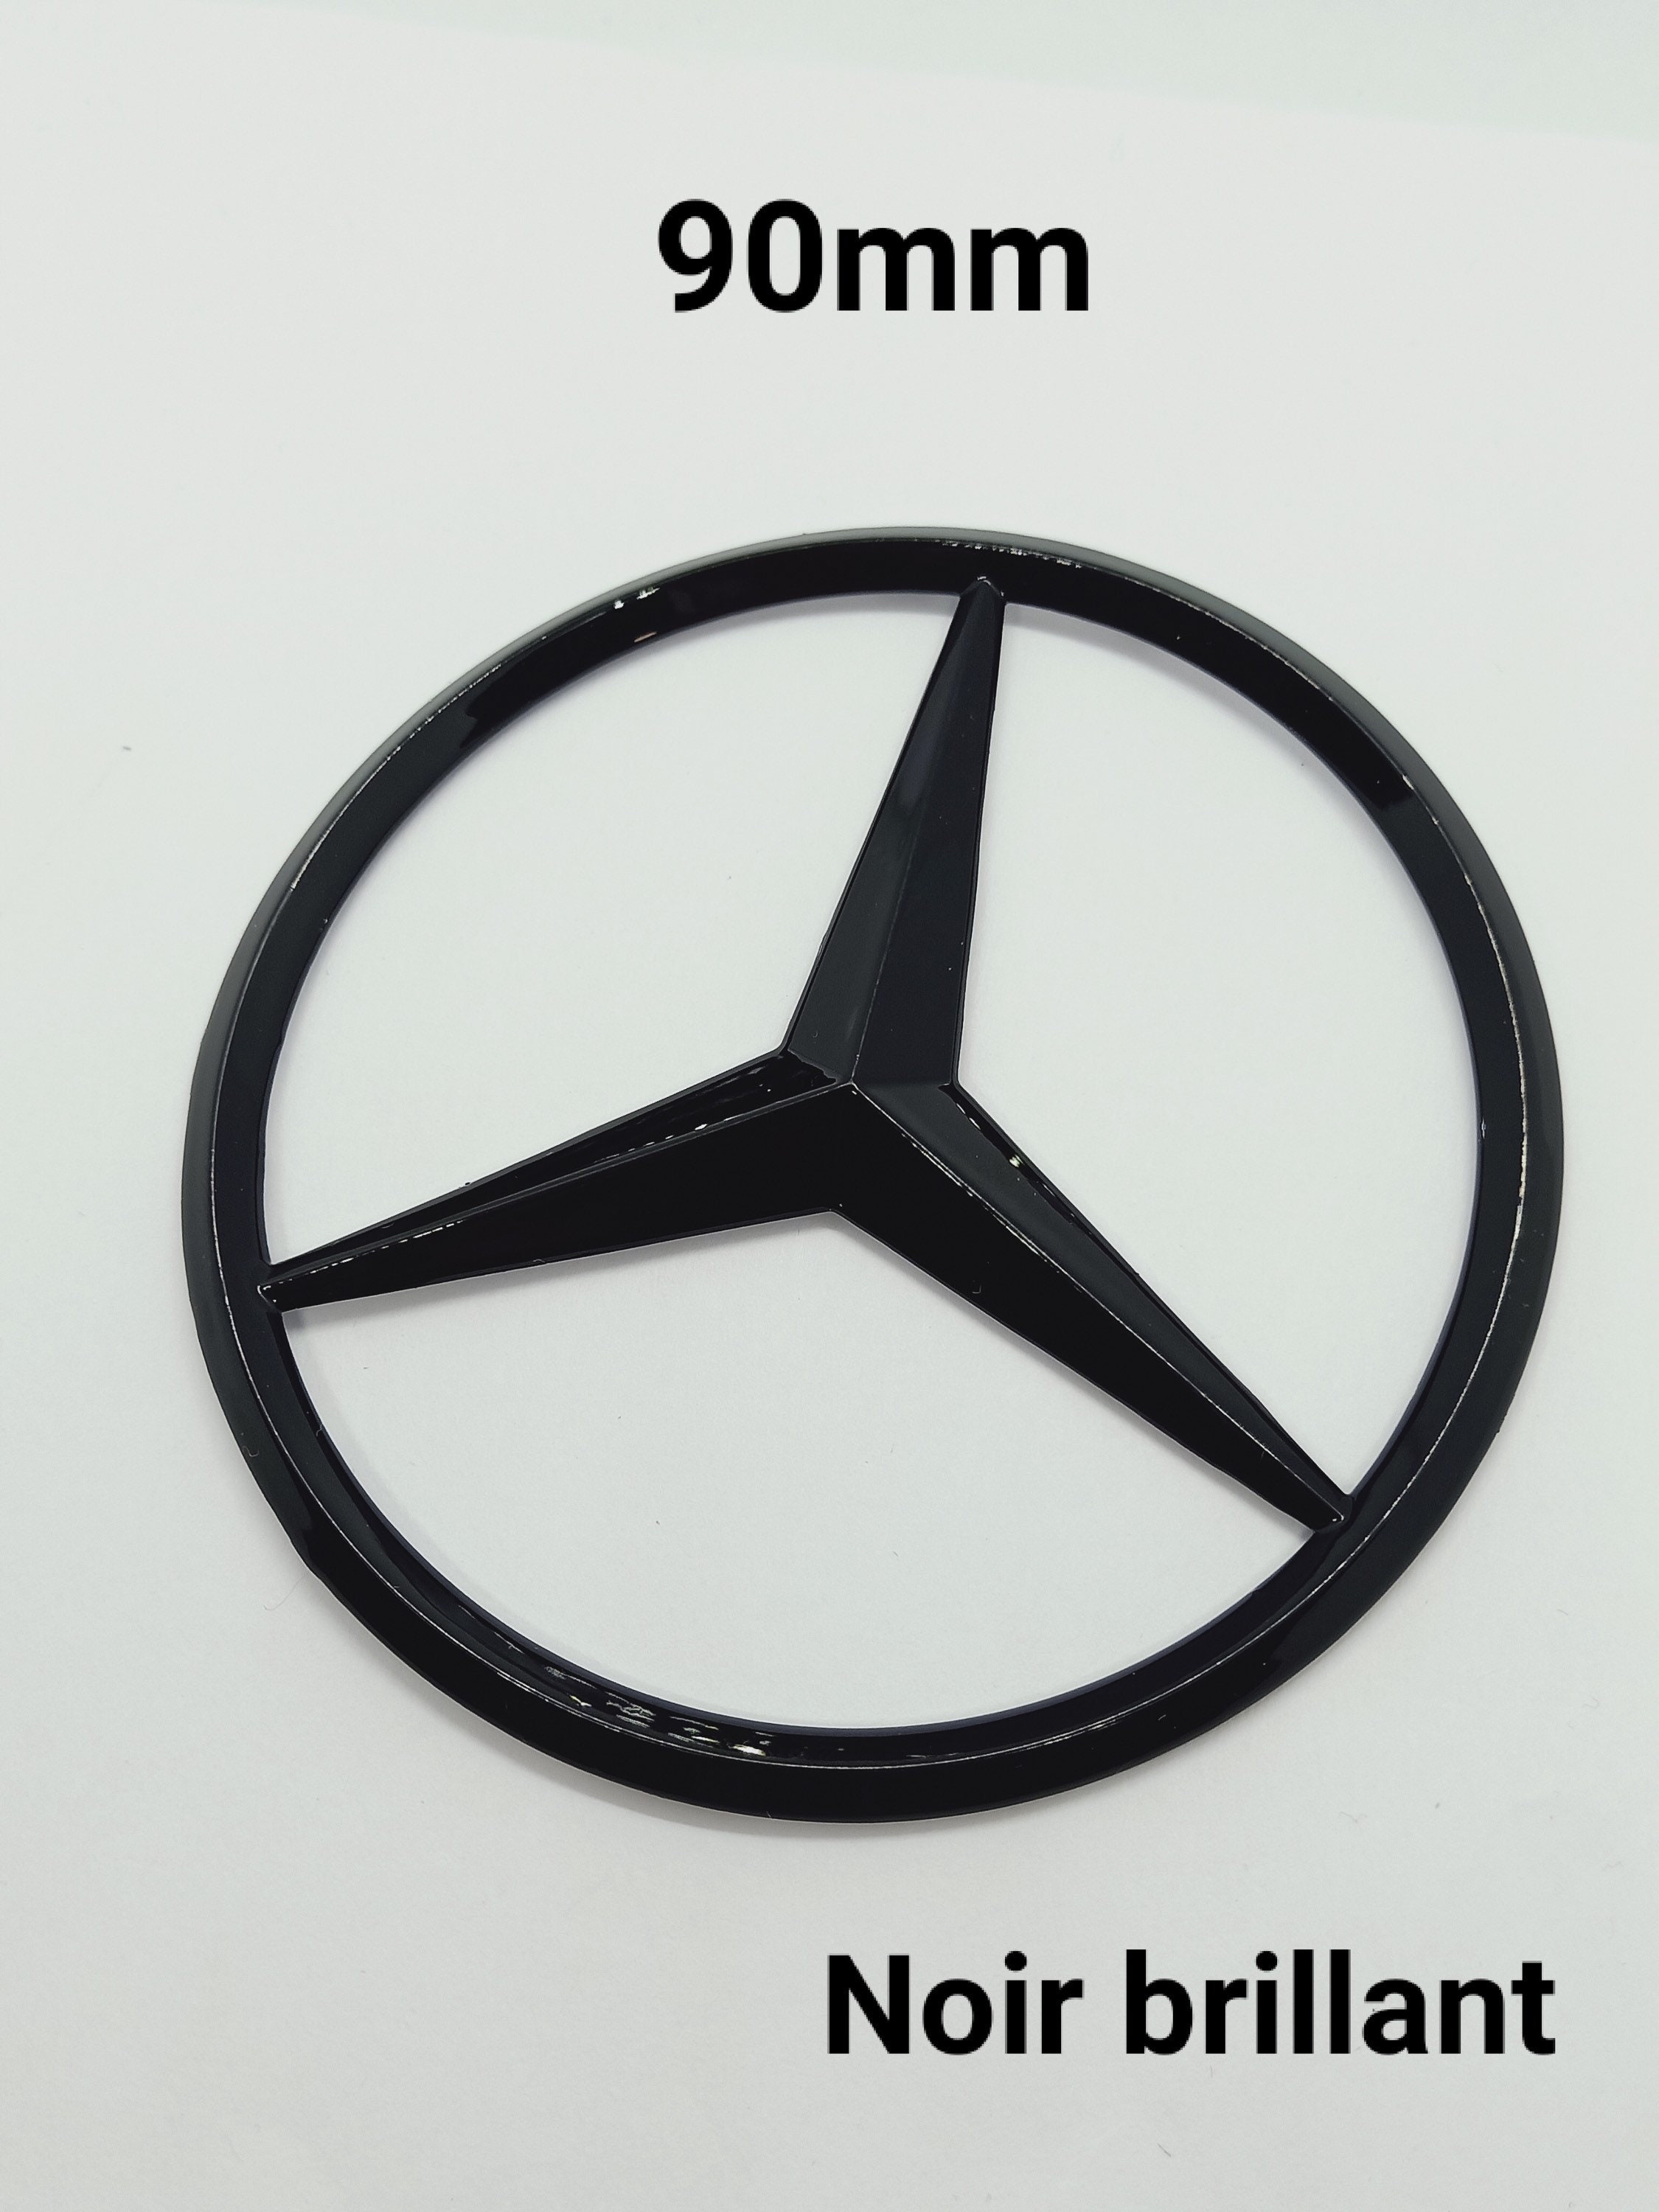 Mercedes deutet seinen ikonischen Stern um › PAGE online